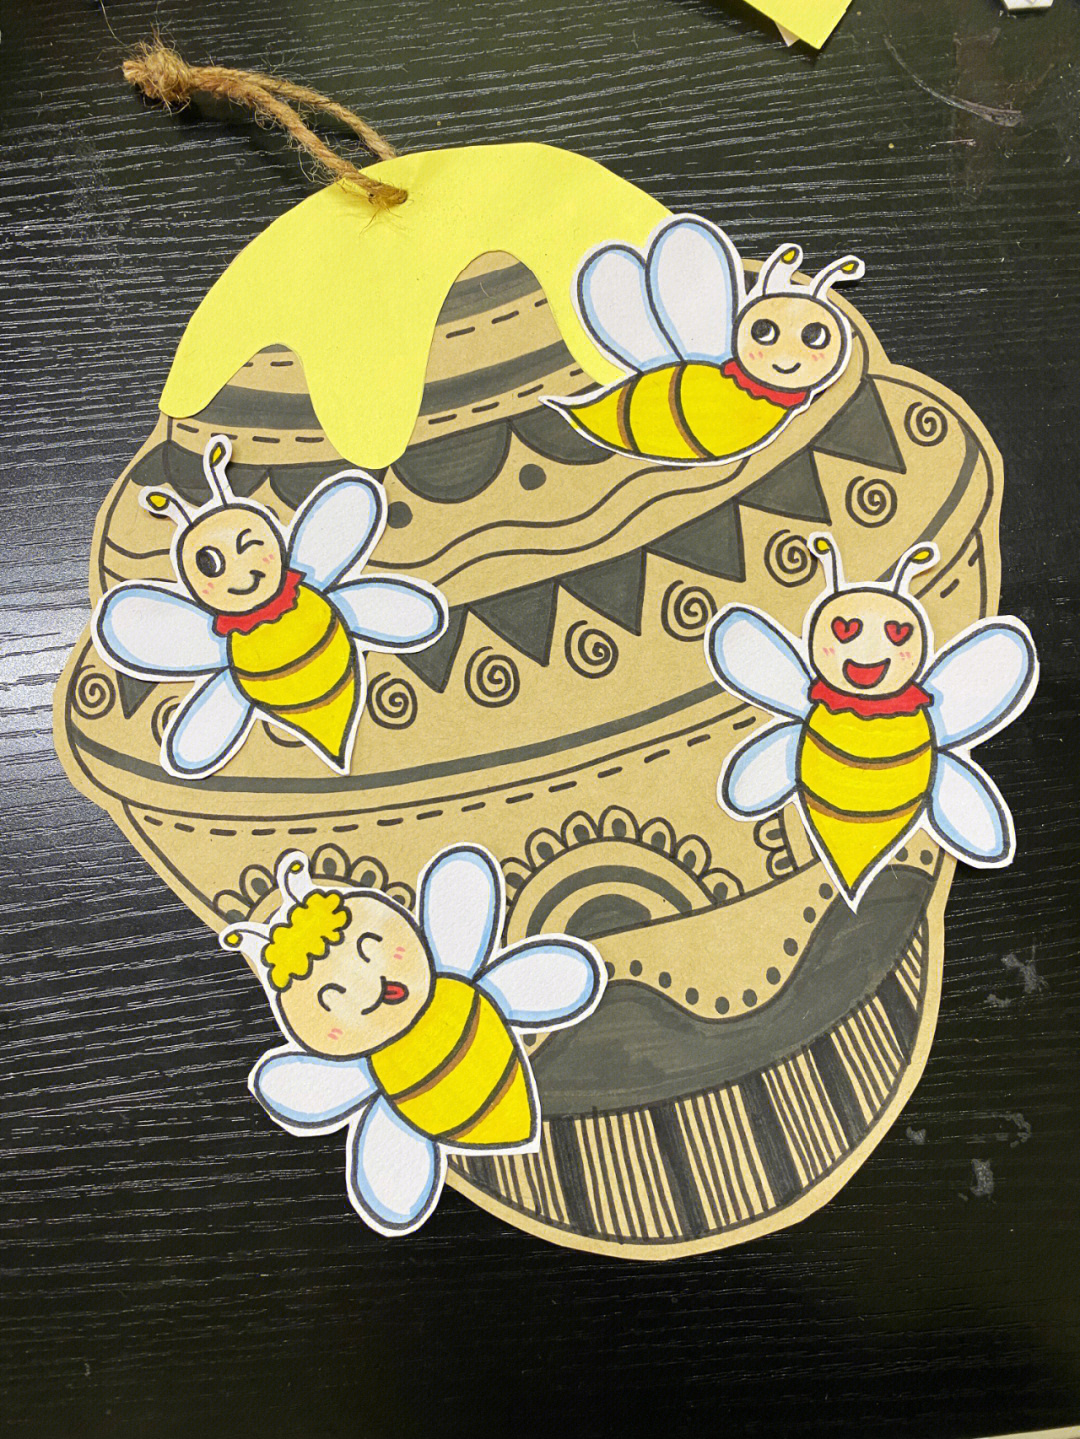 蜜蜂巢简笔画彩色图片